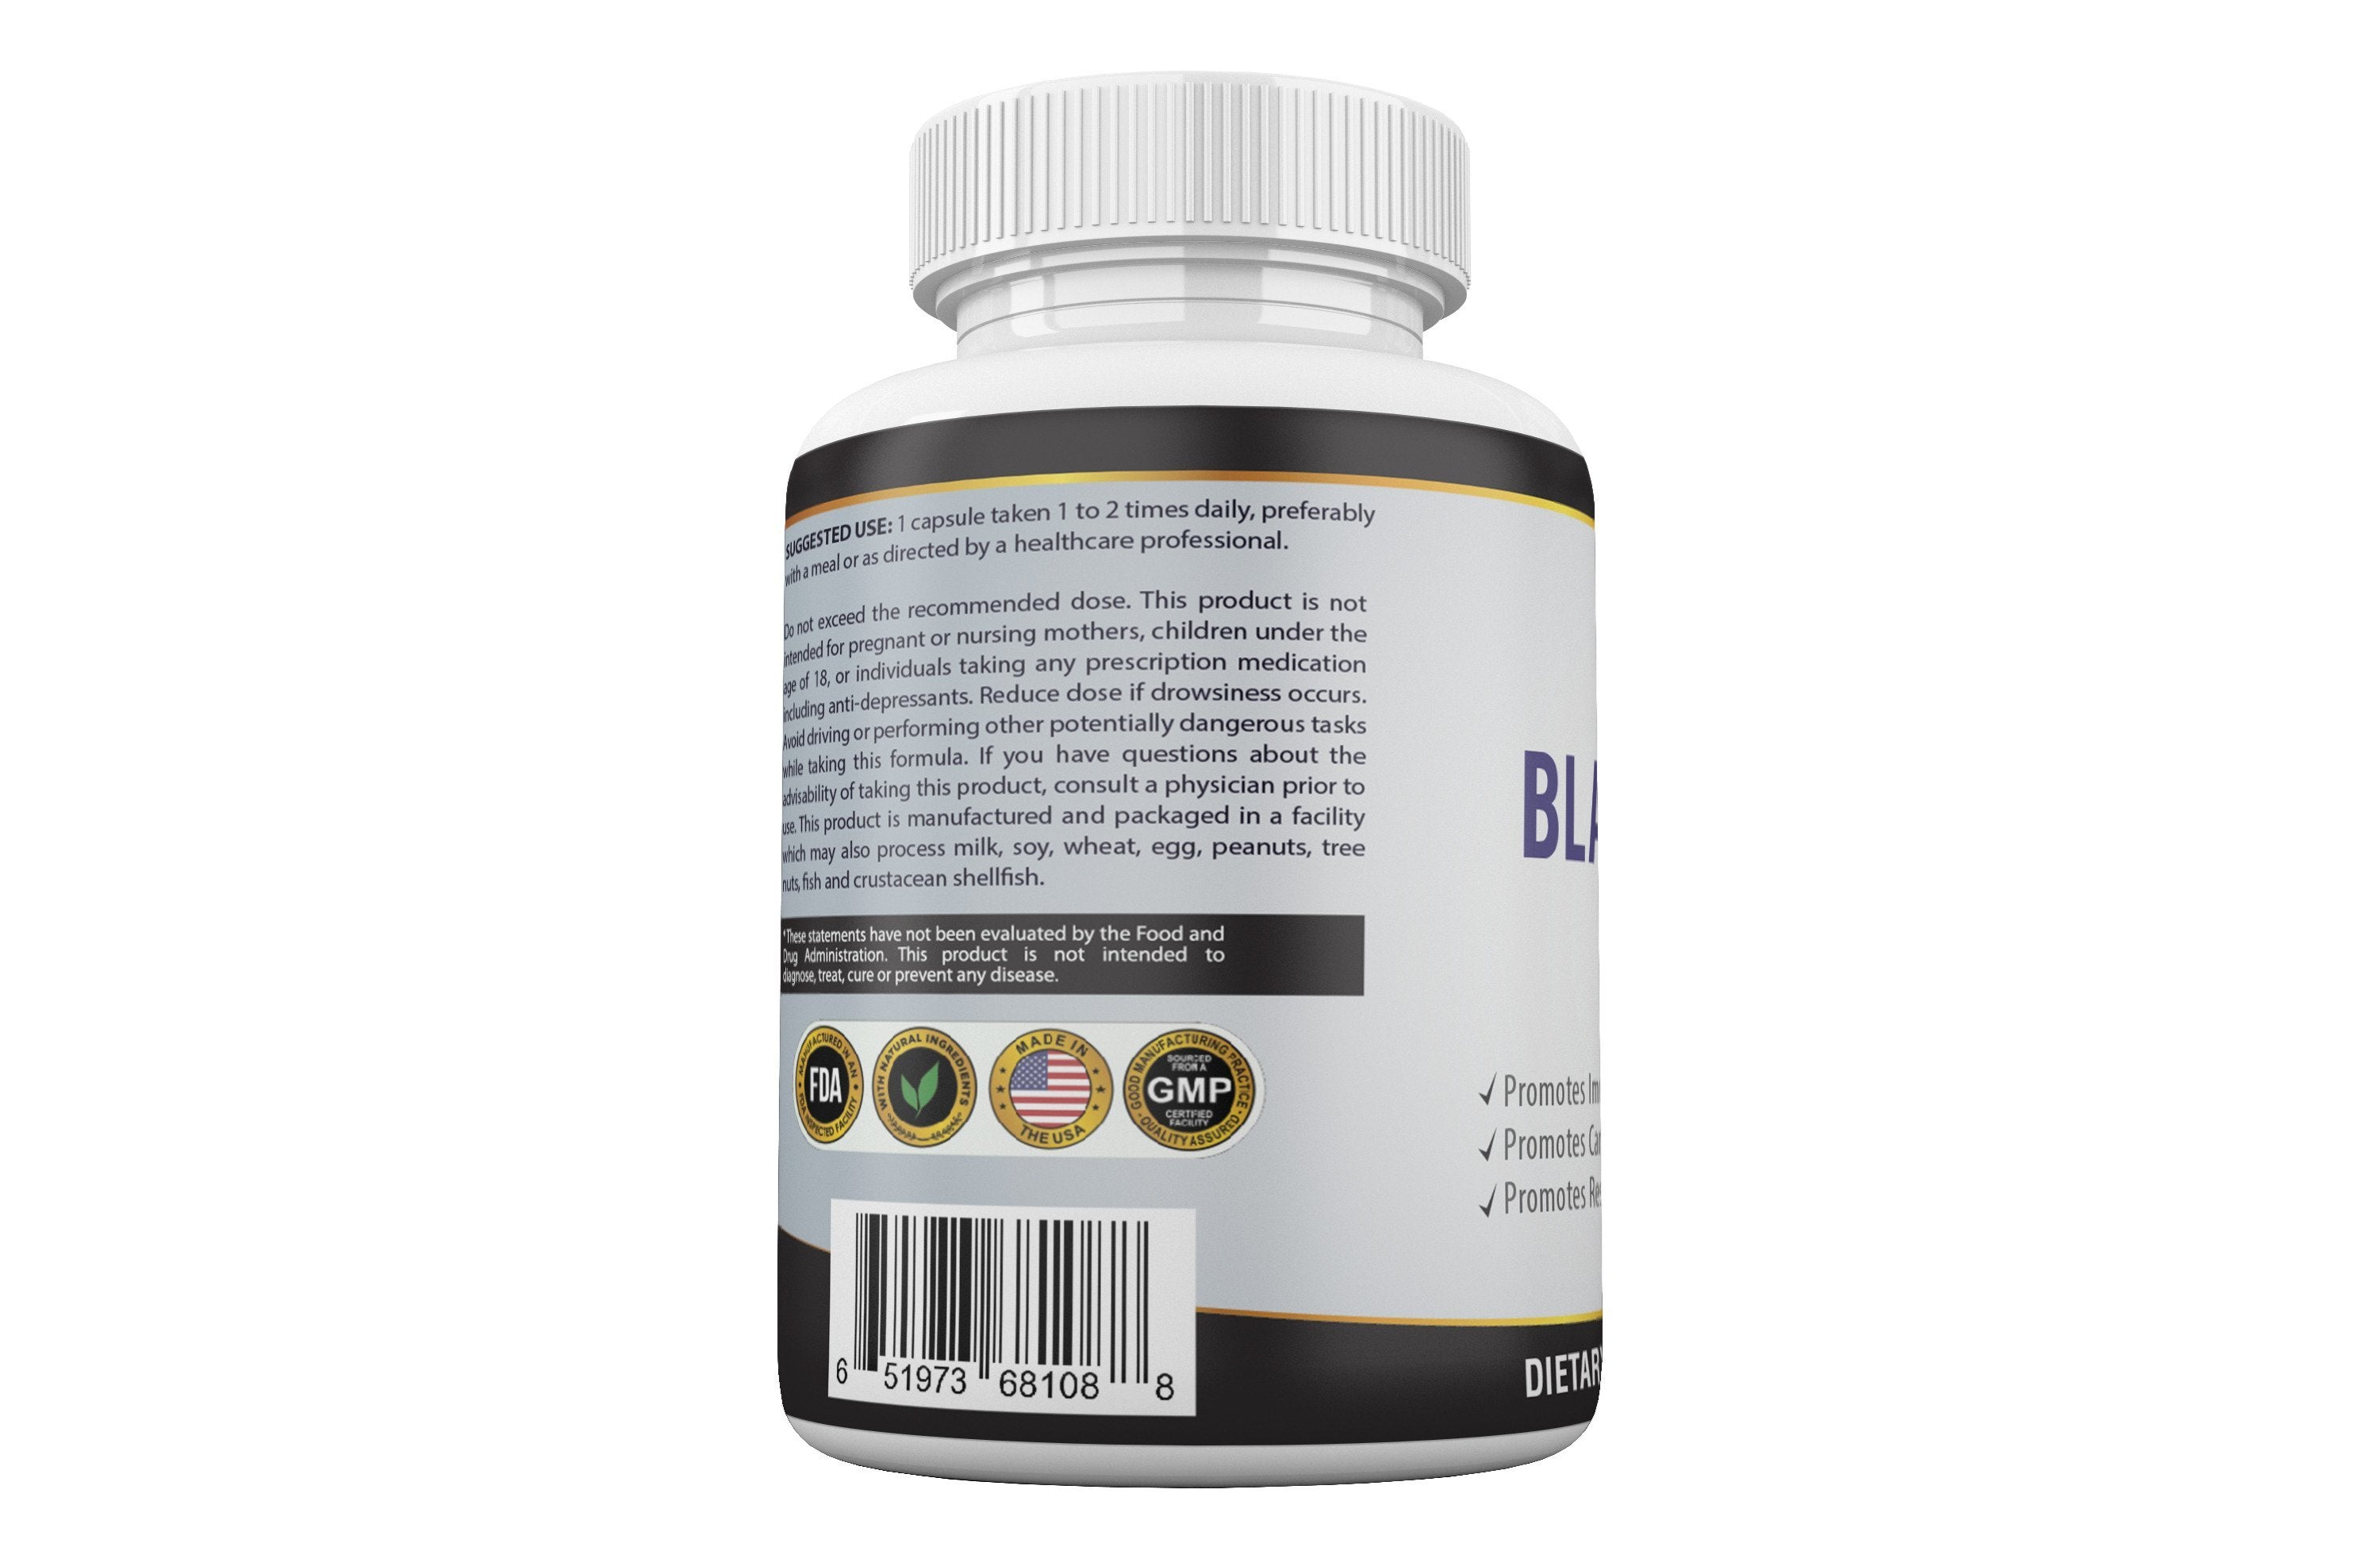 SKU:QIH01-Black Seed Oil Pro Health